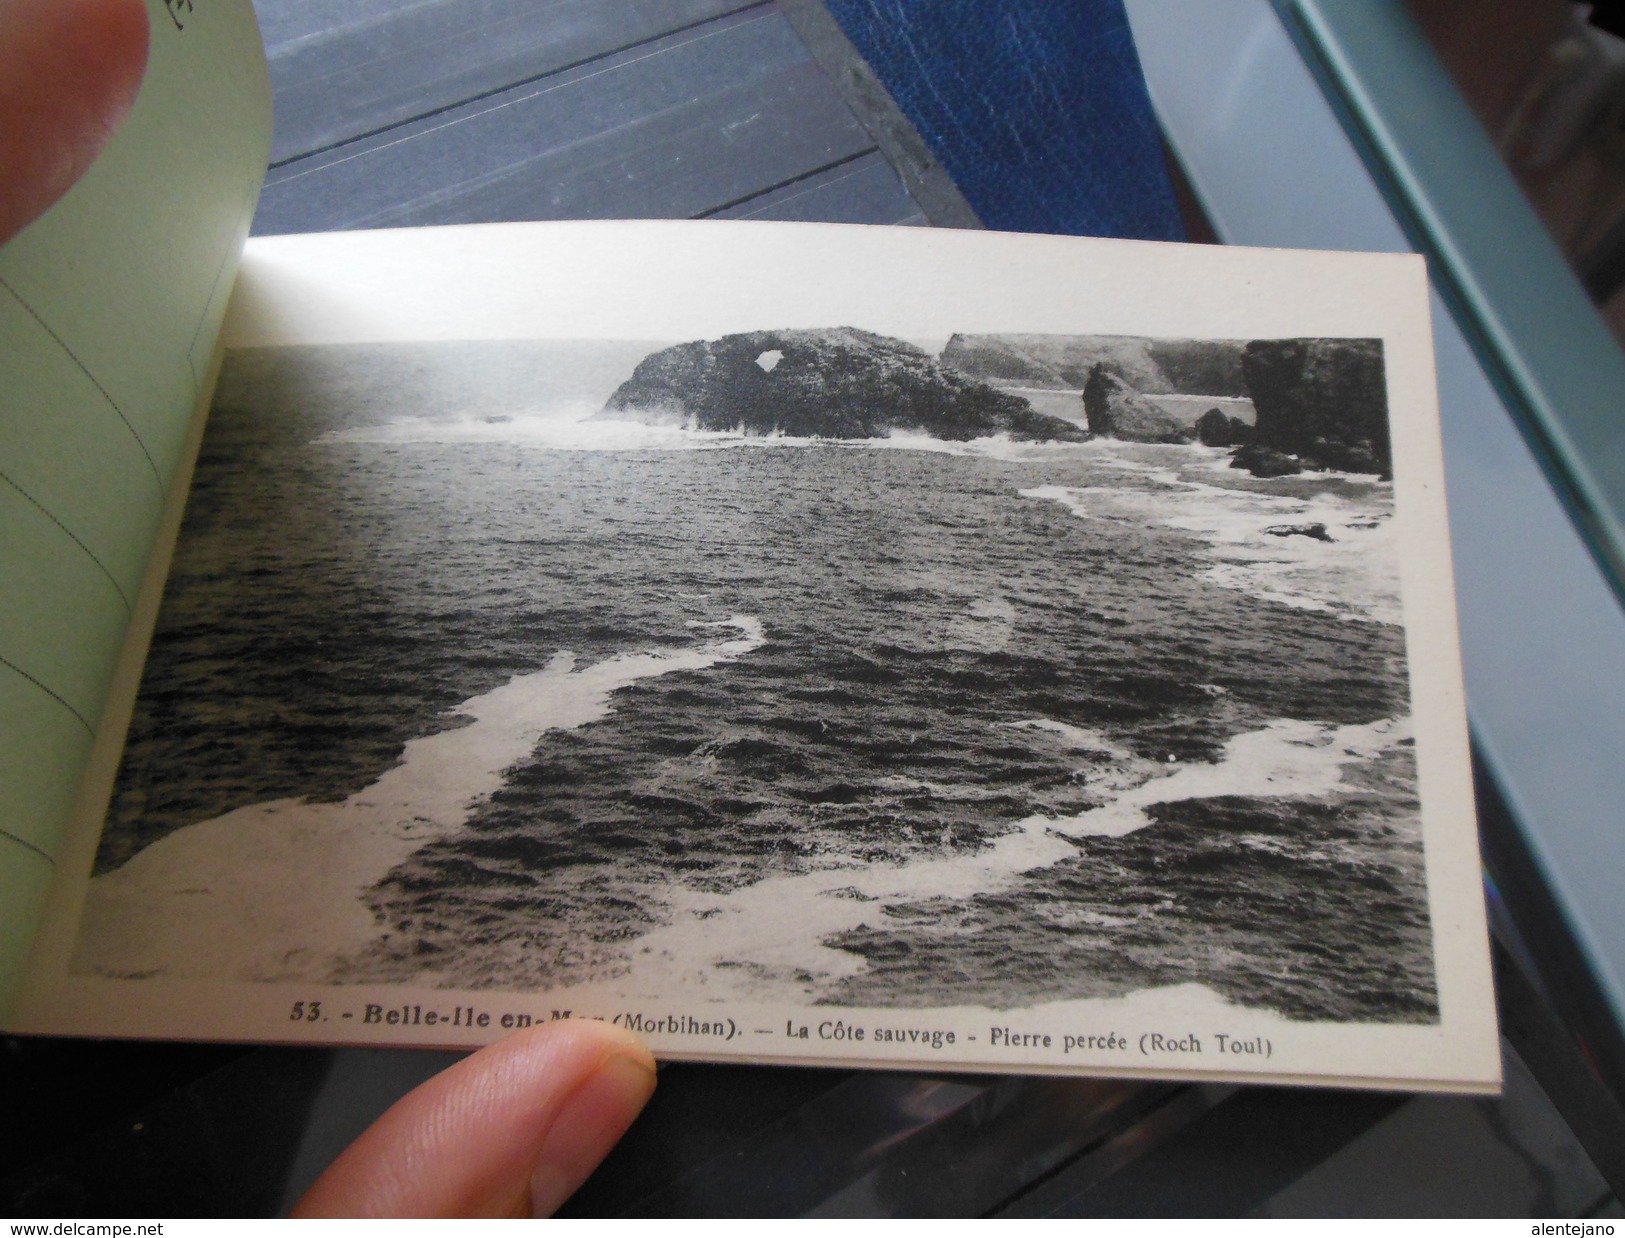 Carnet complet 20 cartes postales Belle-Ile-en-Mer - voir scans